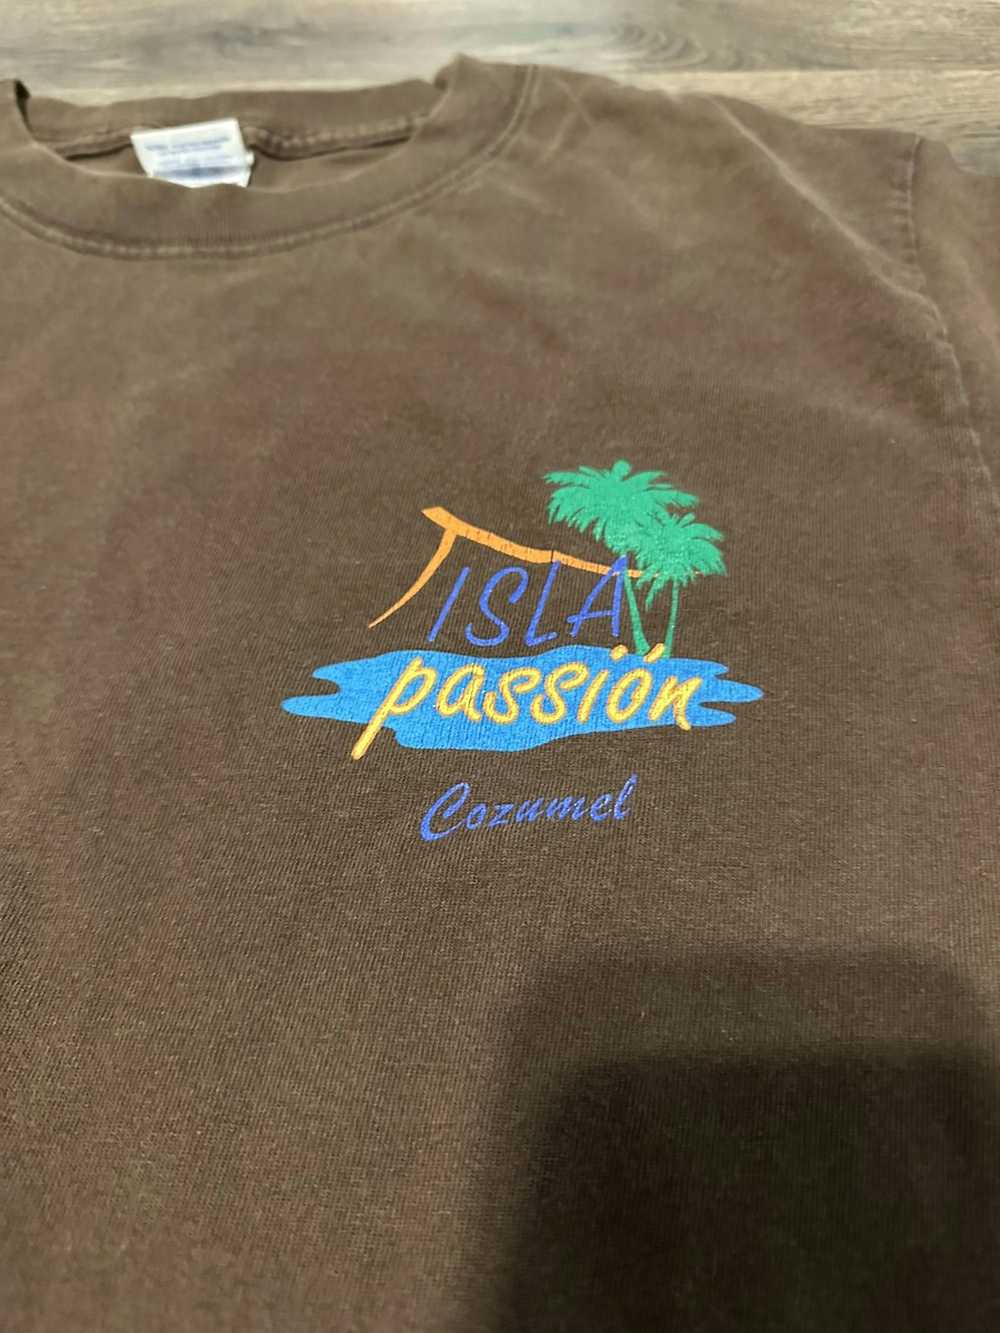 Vintage Islan passion Cozumel tshirt - image 3